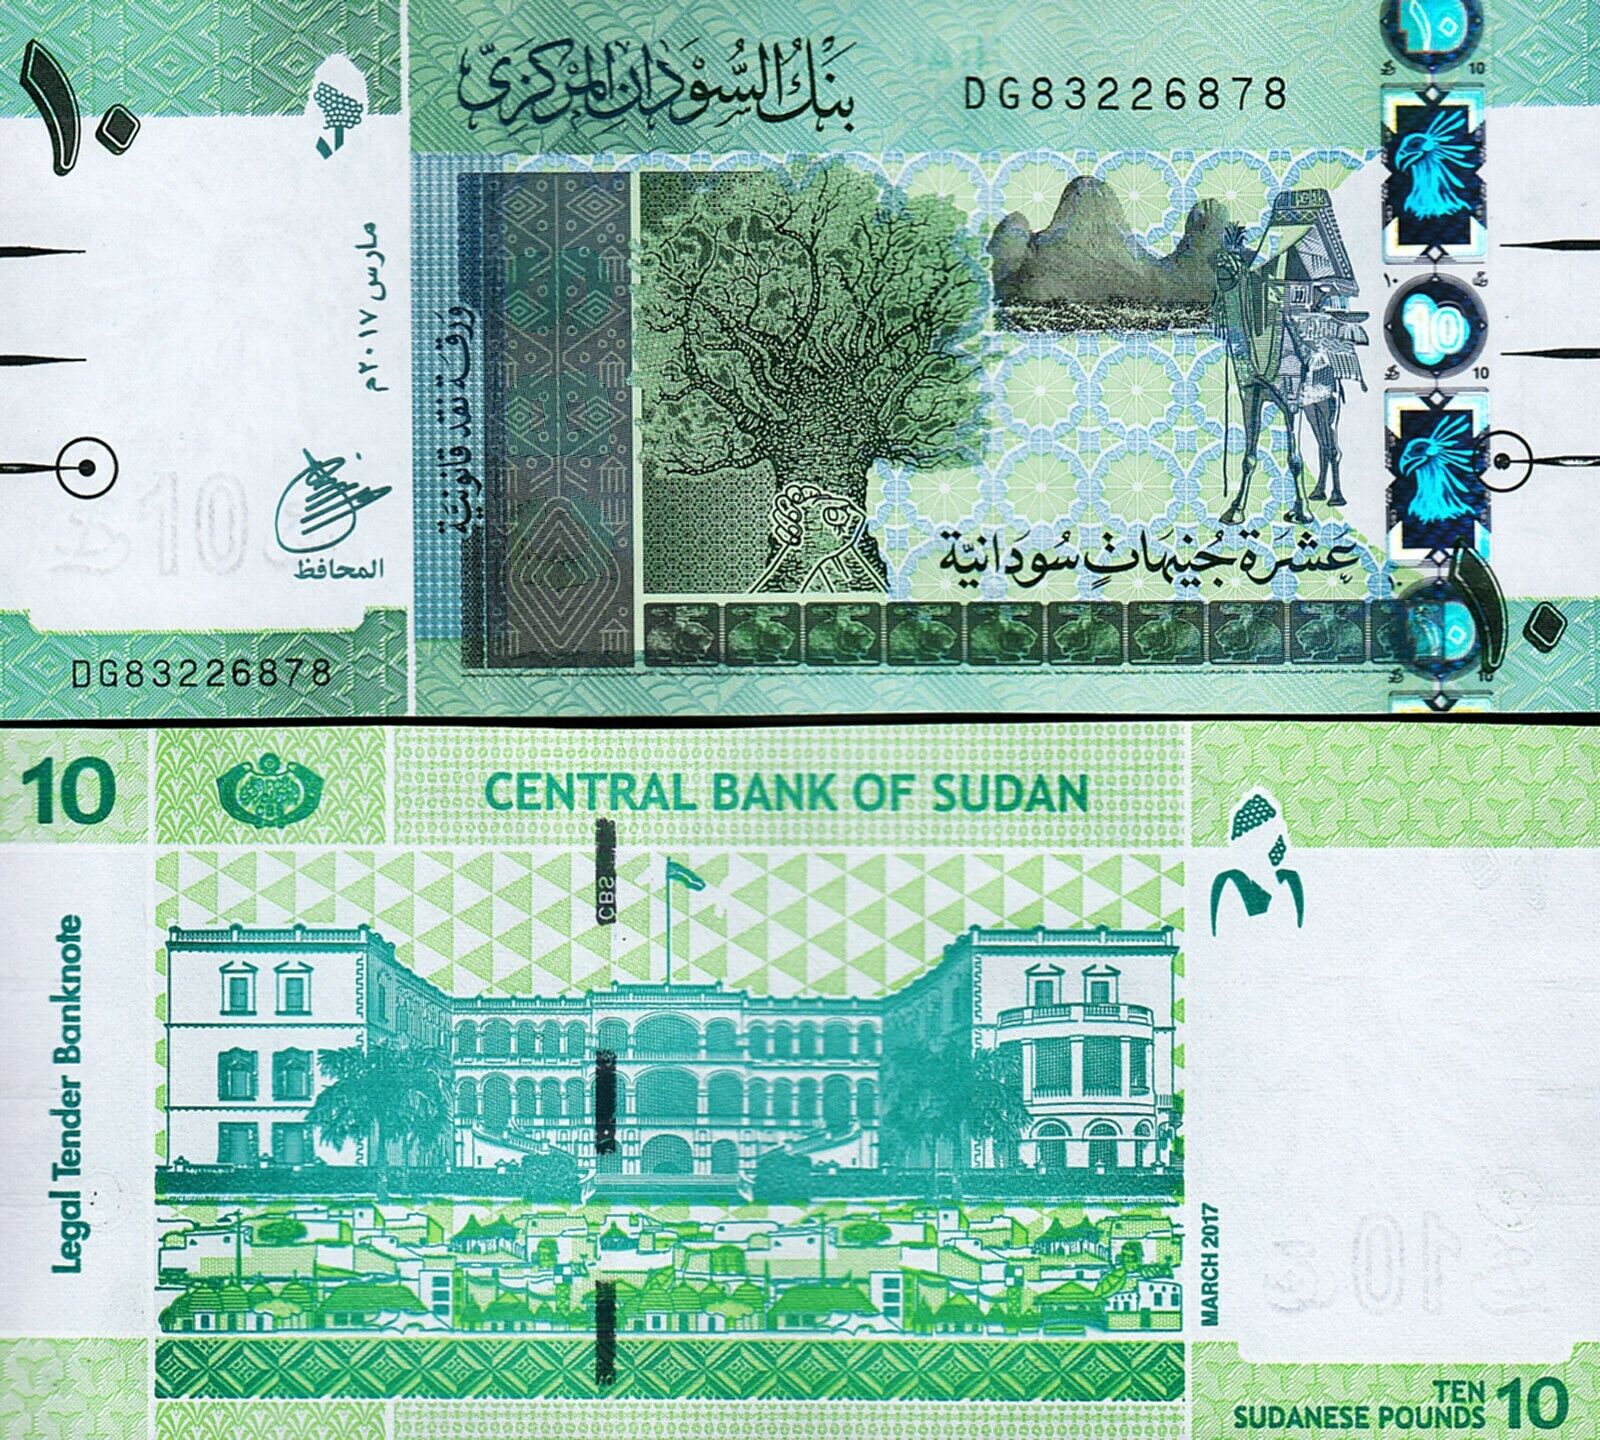 Sudan 2017 - 10 pounds UNC